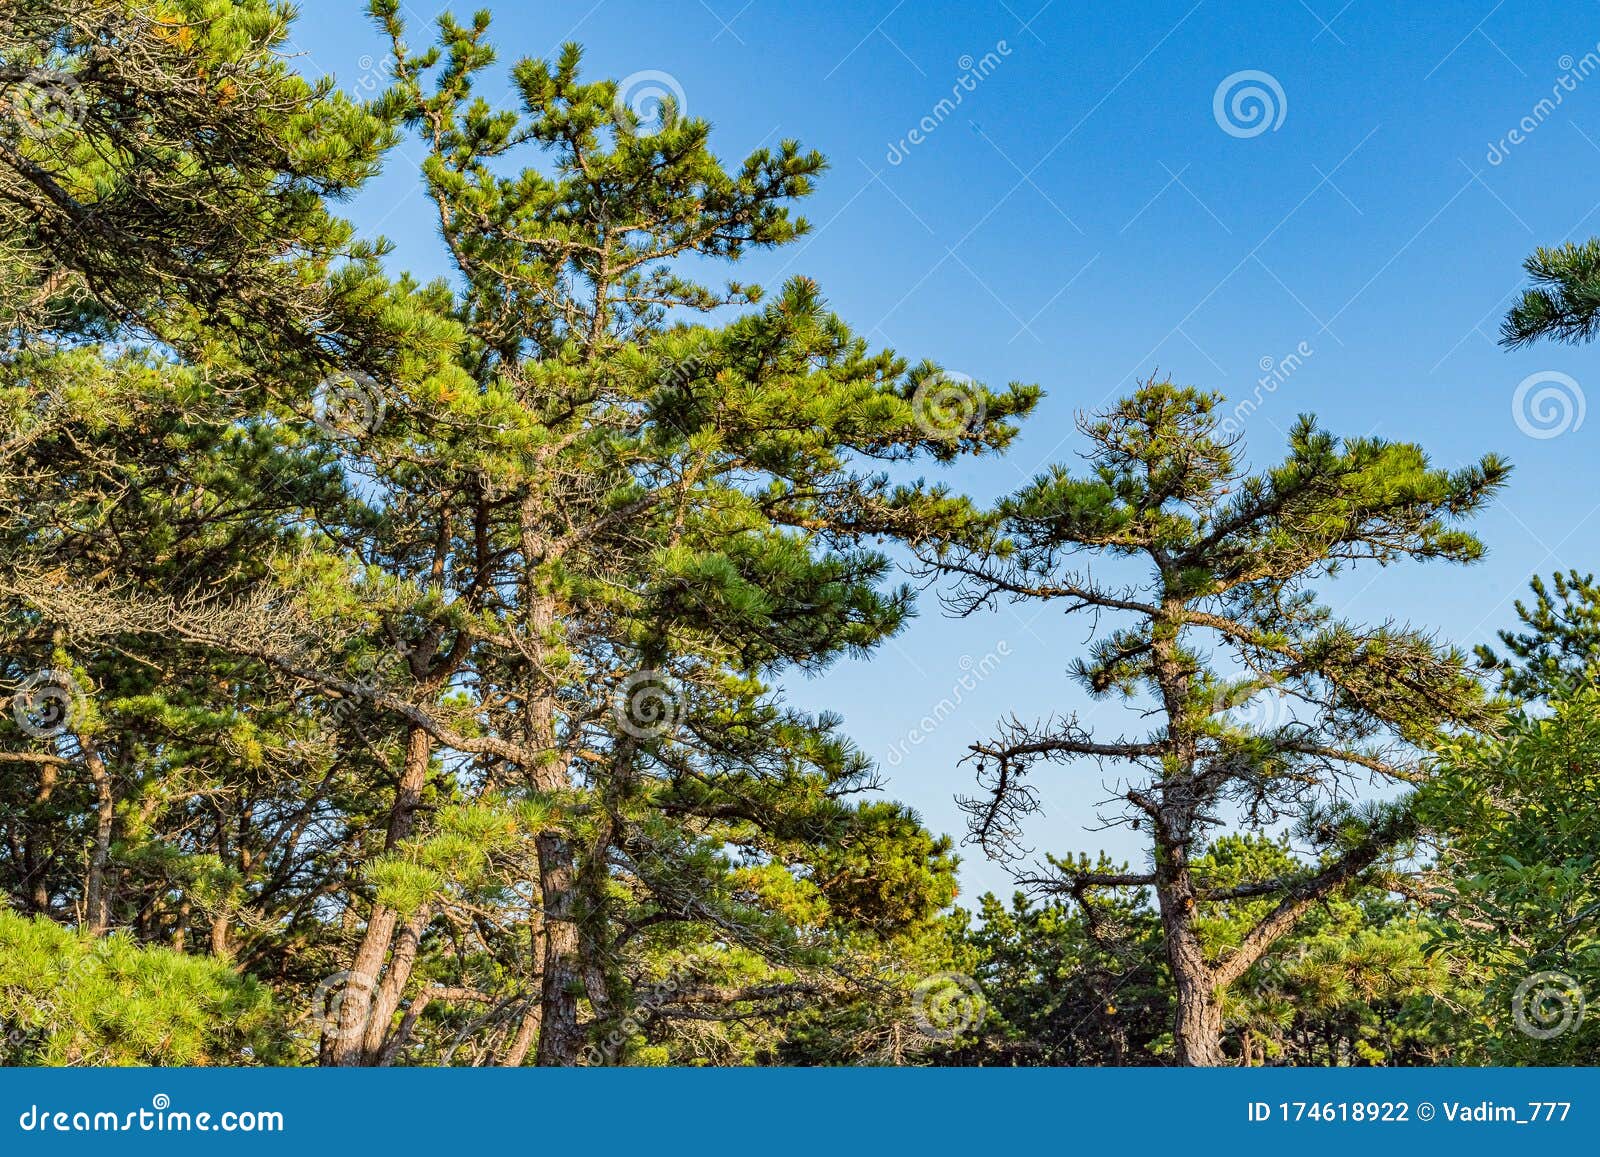 Pine Forest On Dunes, Ecoregion Pine Wasteland, Cape Cod